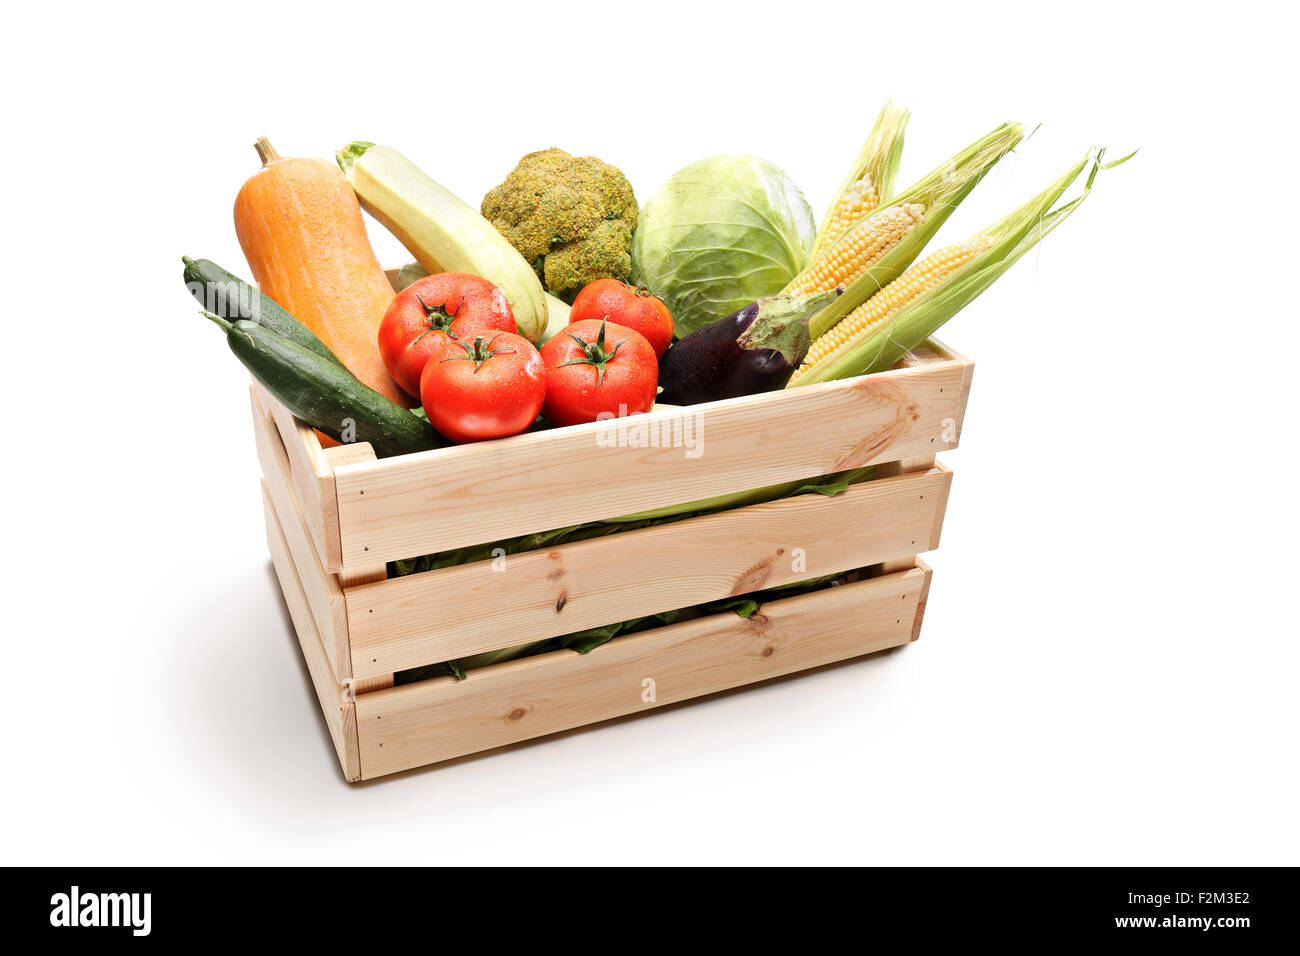 Foto de estudio de una caja de madera llena de diferentes tipos de hortalizas frescas aislado sobre fondo blanco. Foto de stock